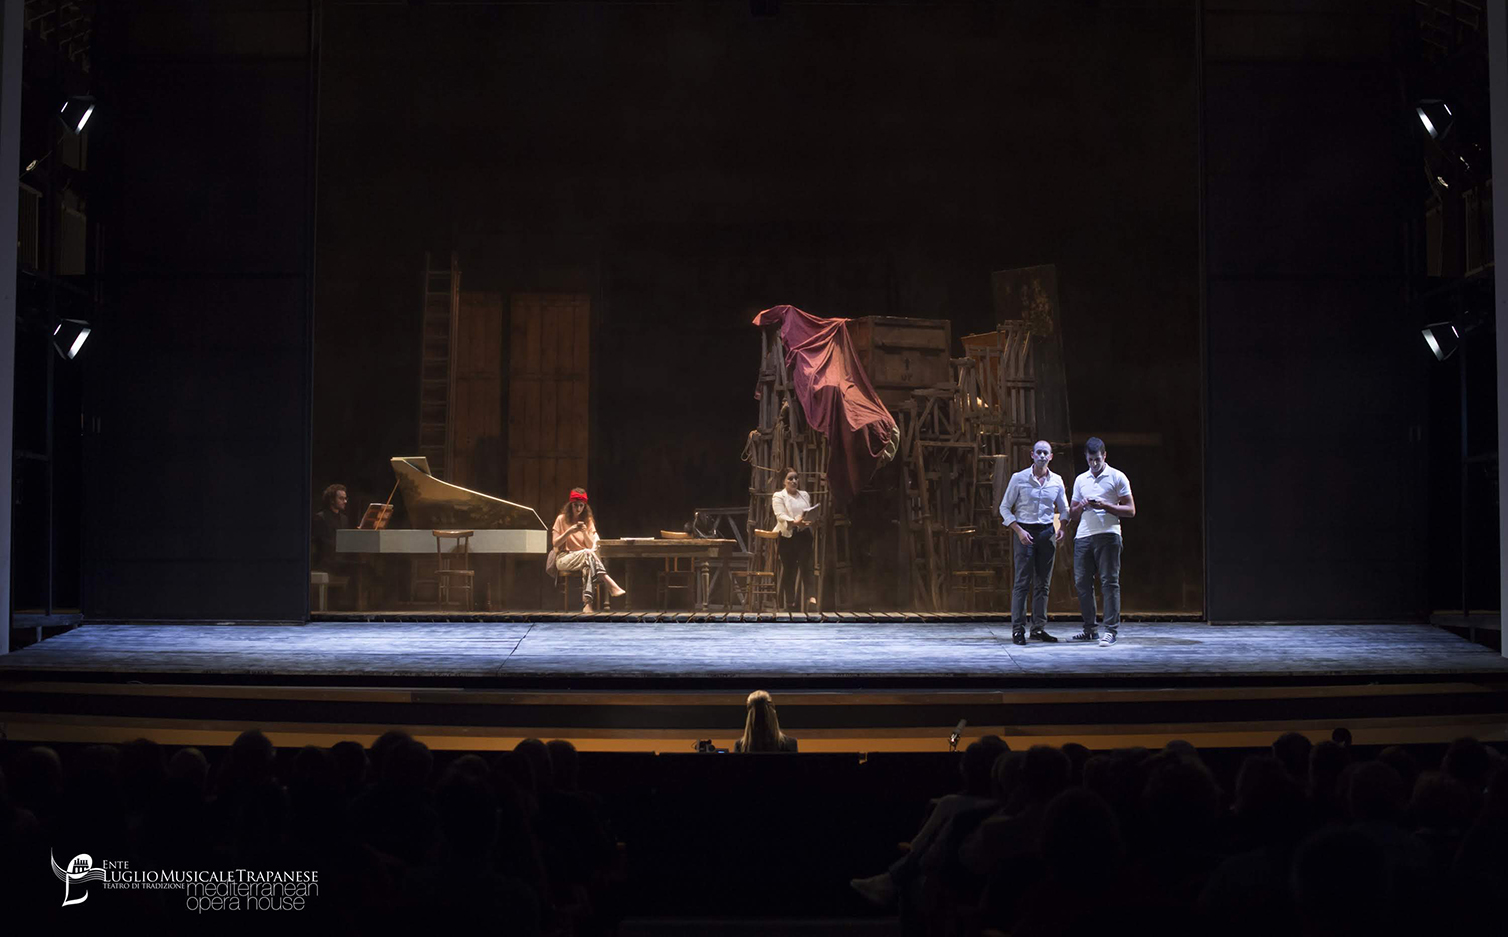 Rappresentazione di La Prova di un opera seria, scene e costumi di Danilo Coppola per il Luglio Musicale Trapanese, anno 2019